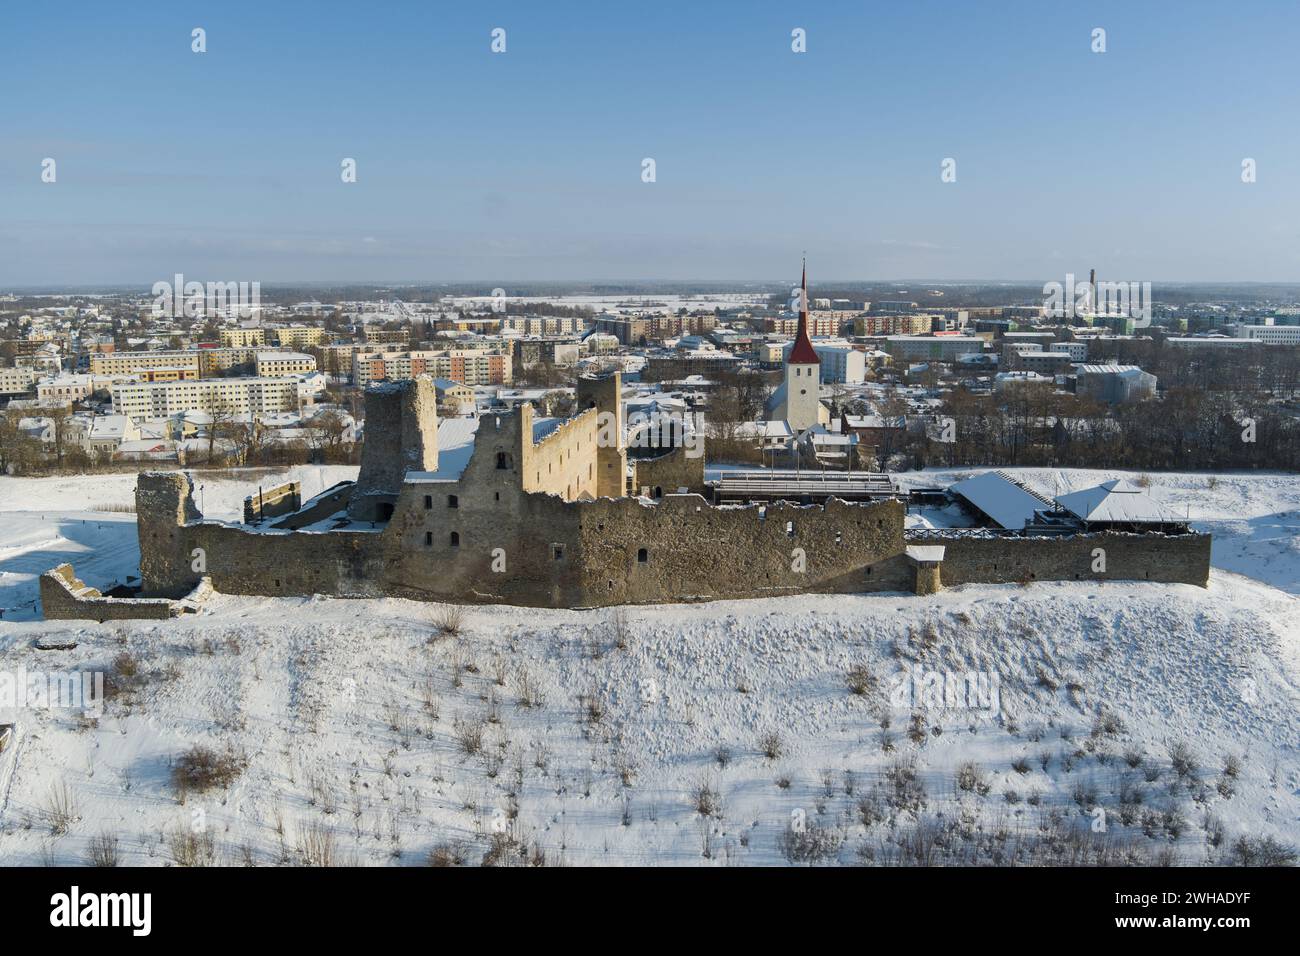 Ruines de l'ancien château de Rakvere en hiver, photo d'un drone. Photo de haute qualité Banque D'Images